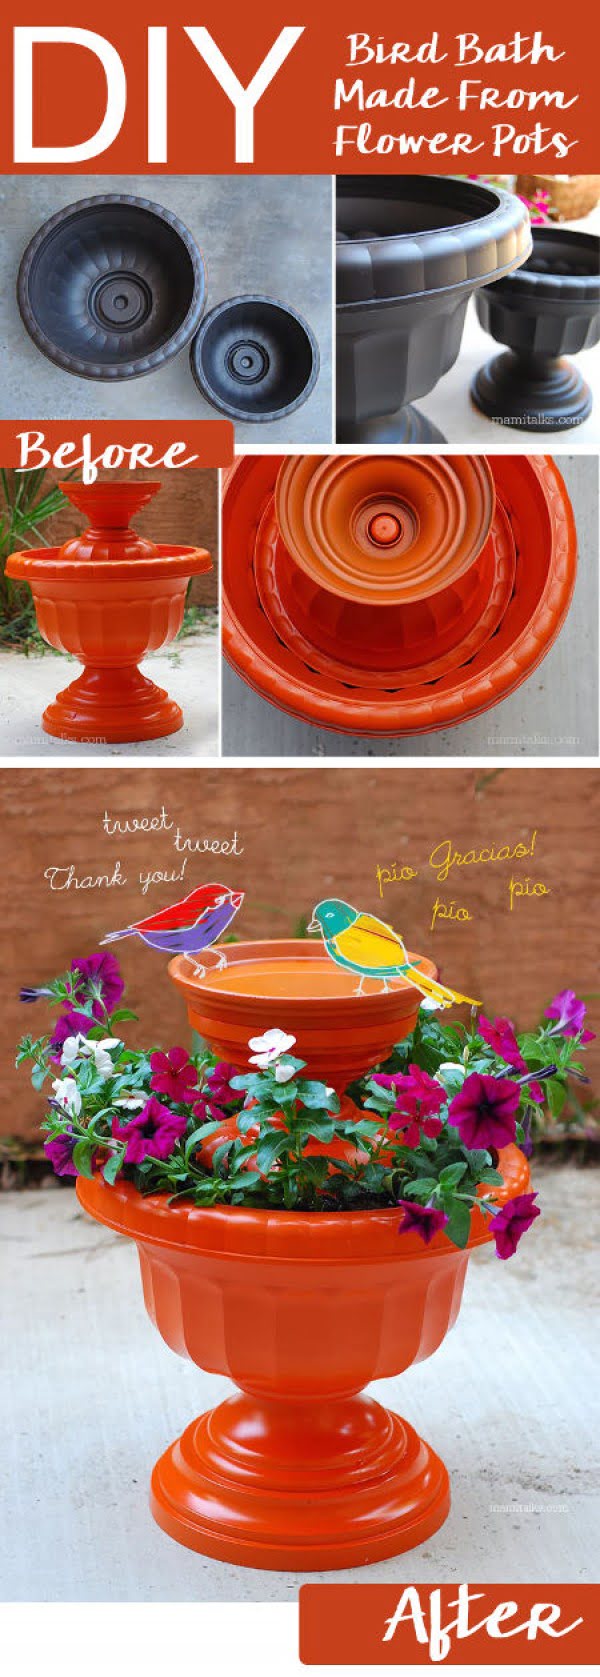 DIY Bird Bath Made From Flower Pots   